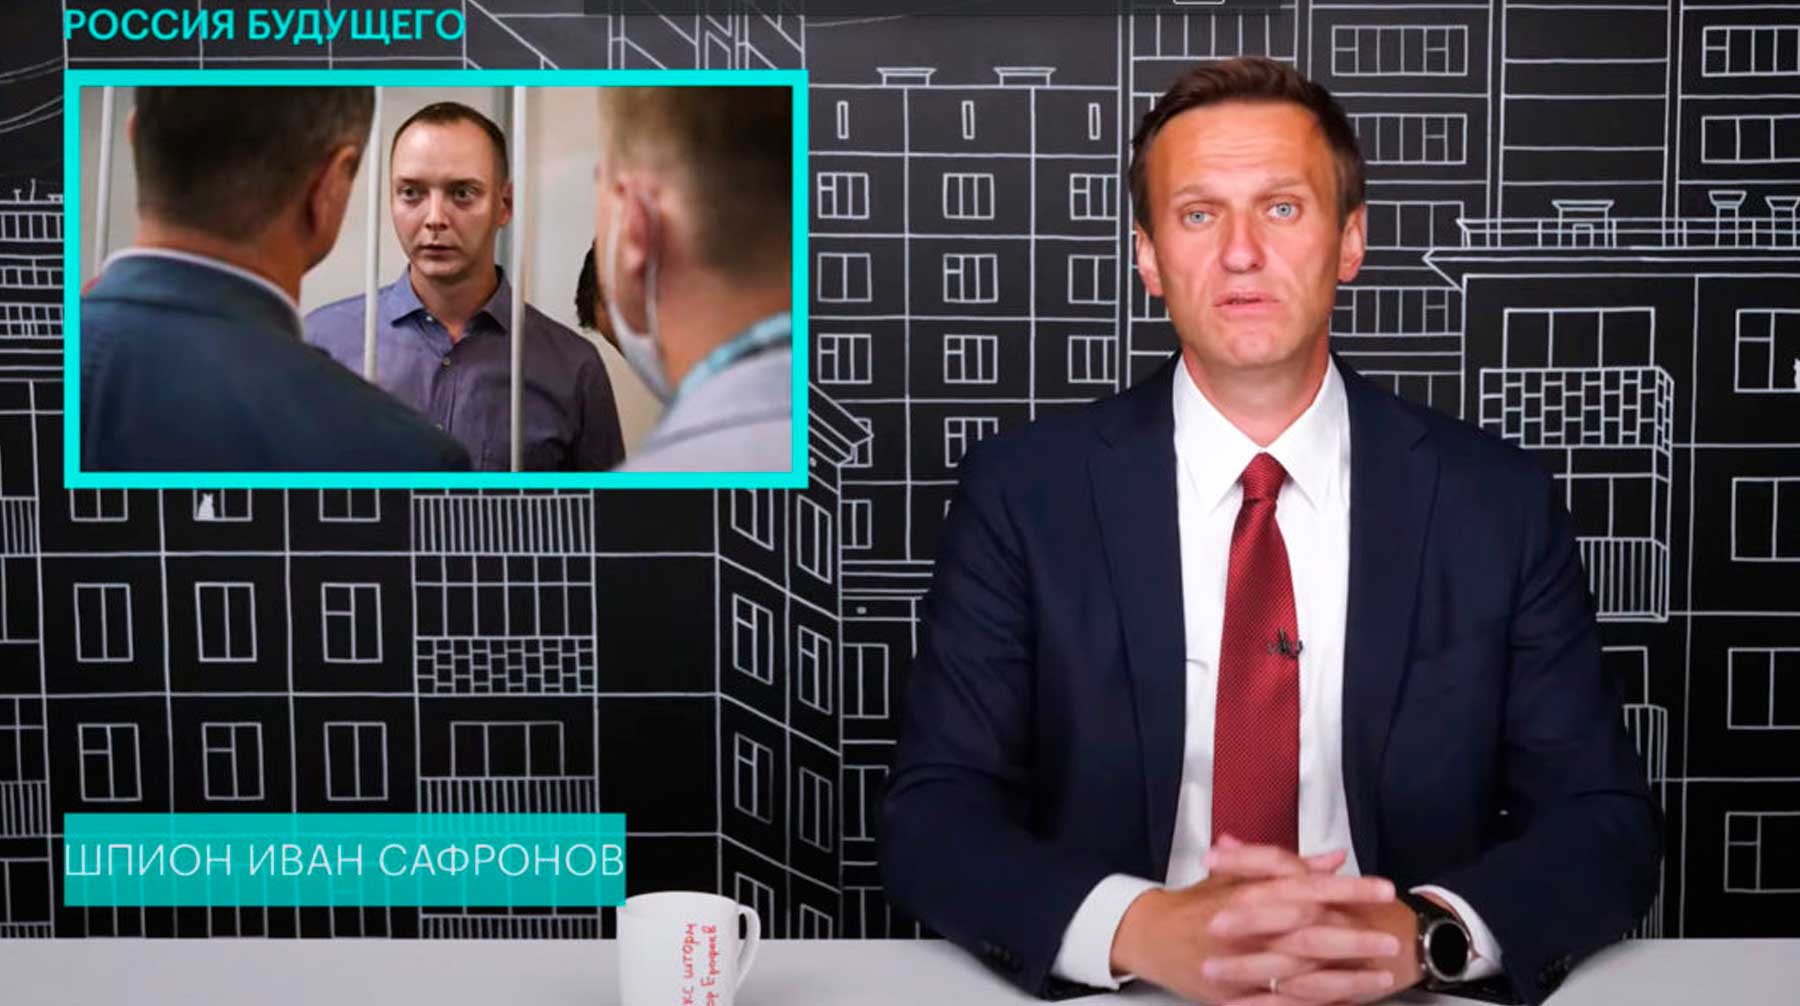 Dailystorm - «Журналисты — не обслуга»: Зыгарь и Голунов заступились за Сафронова после критики Навального